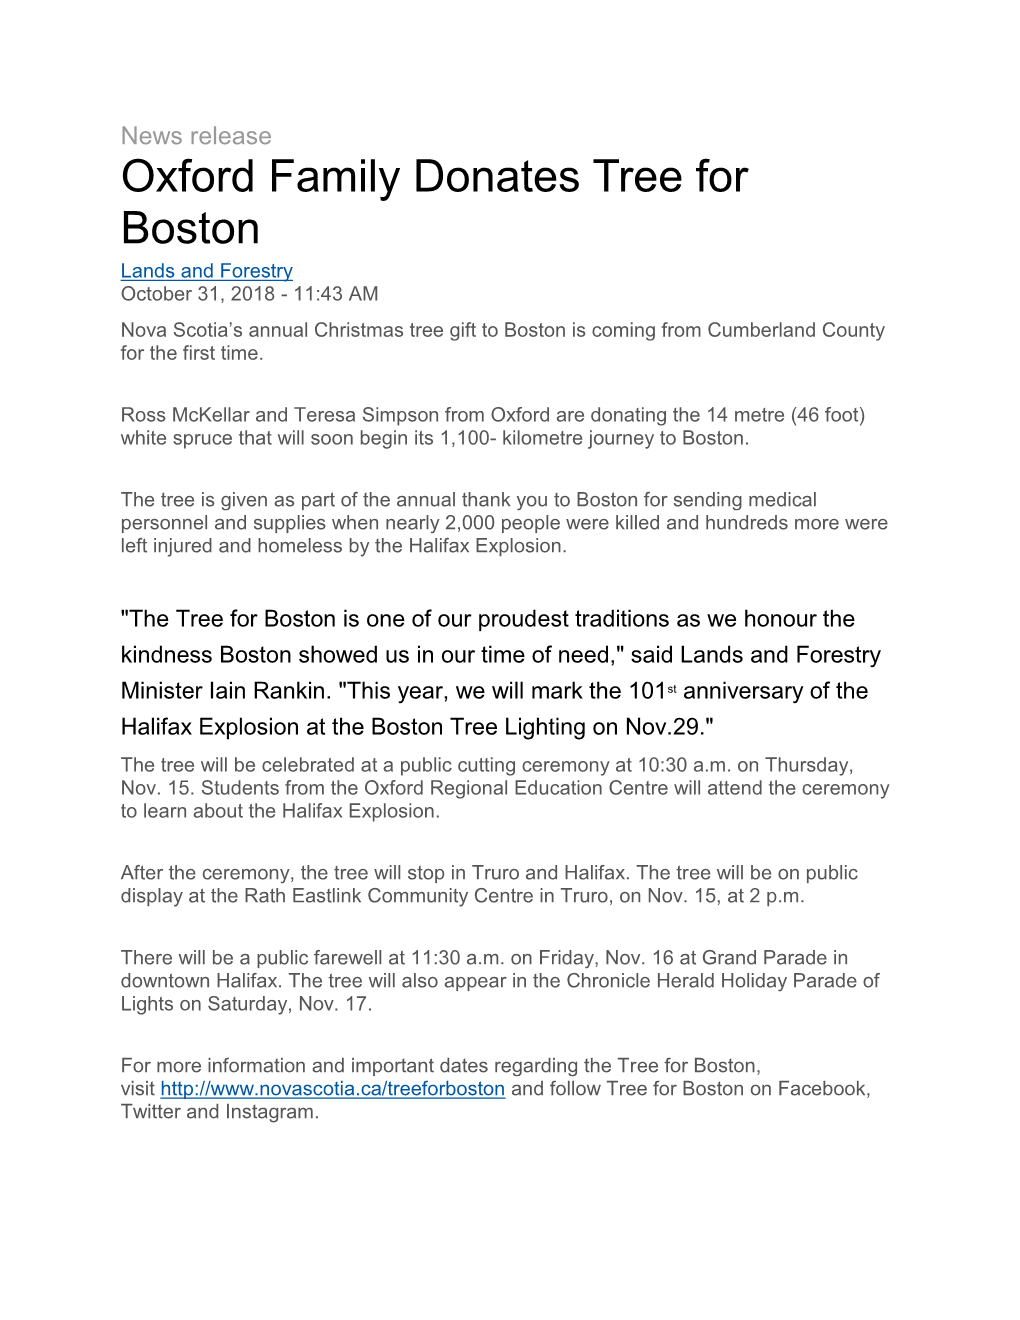 Oxford Family Donates Tree for Boston